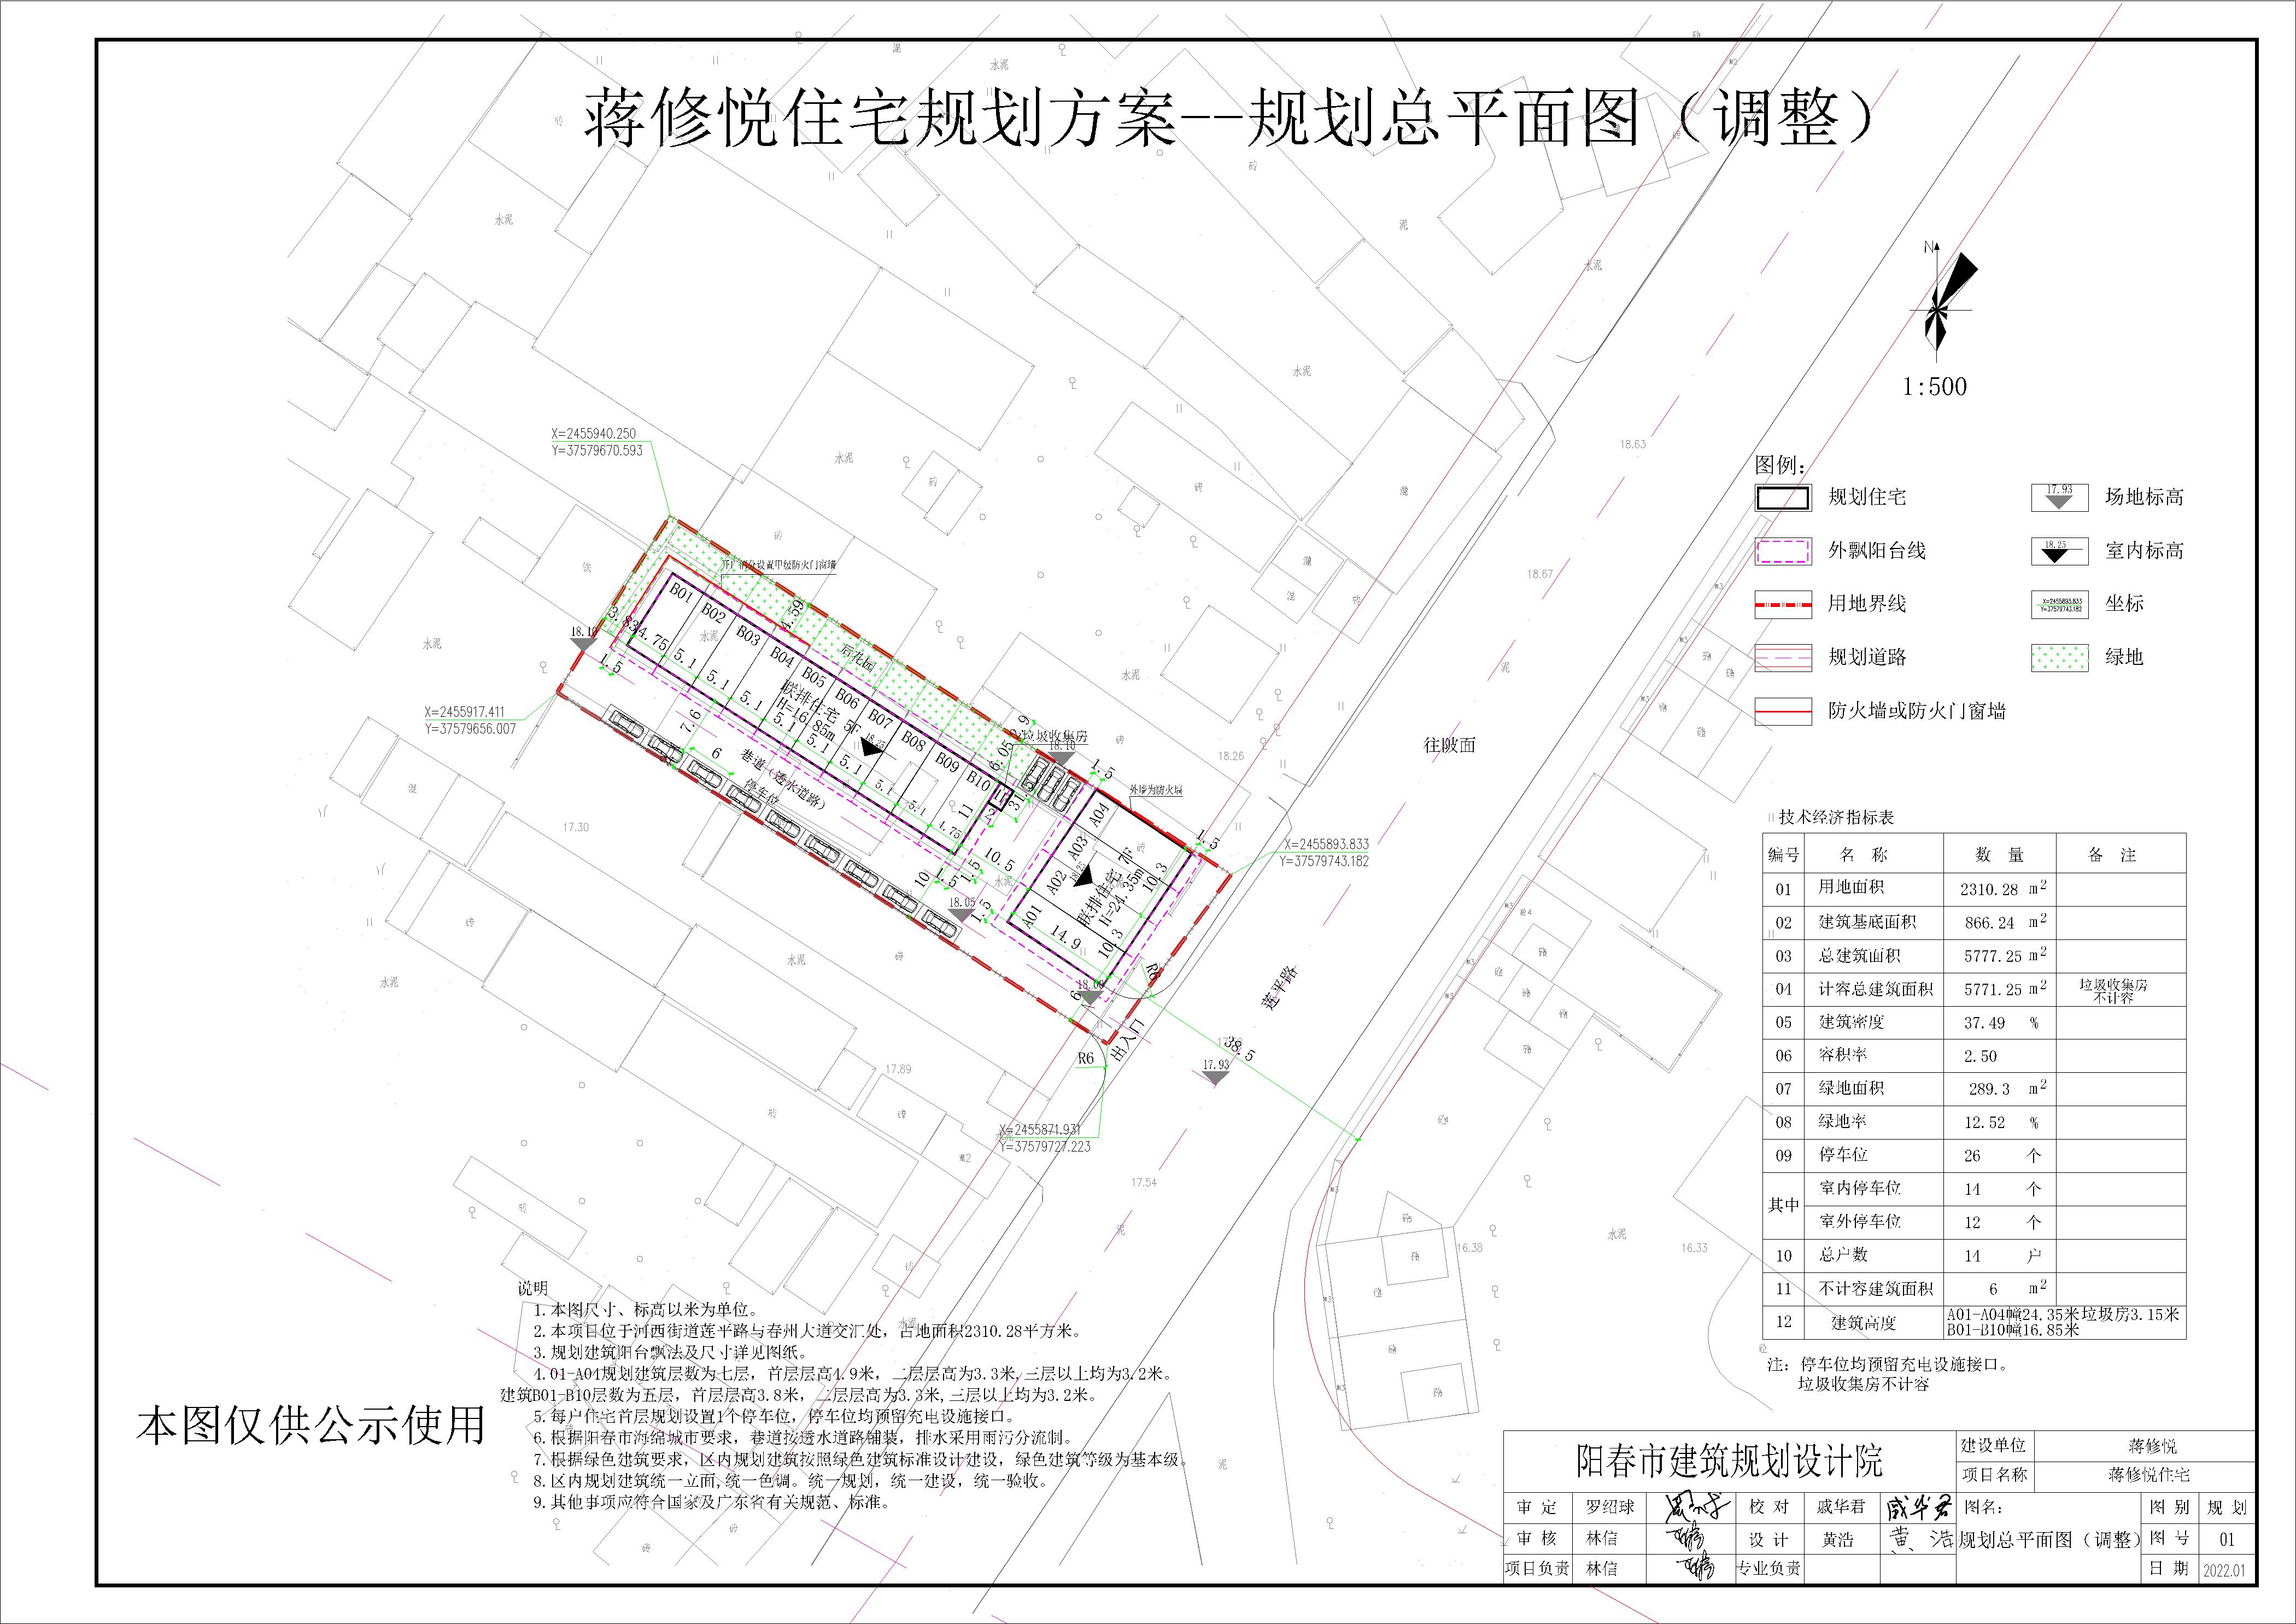 蒋修悦住宅（阳春市河西街道莲平路）规划图2022.09.22_t3(公示-模型.jpg